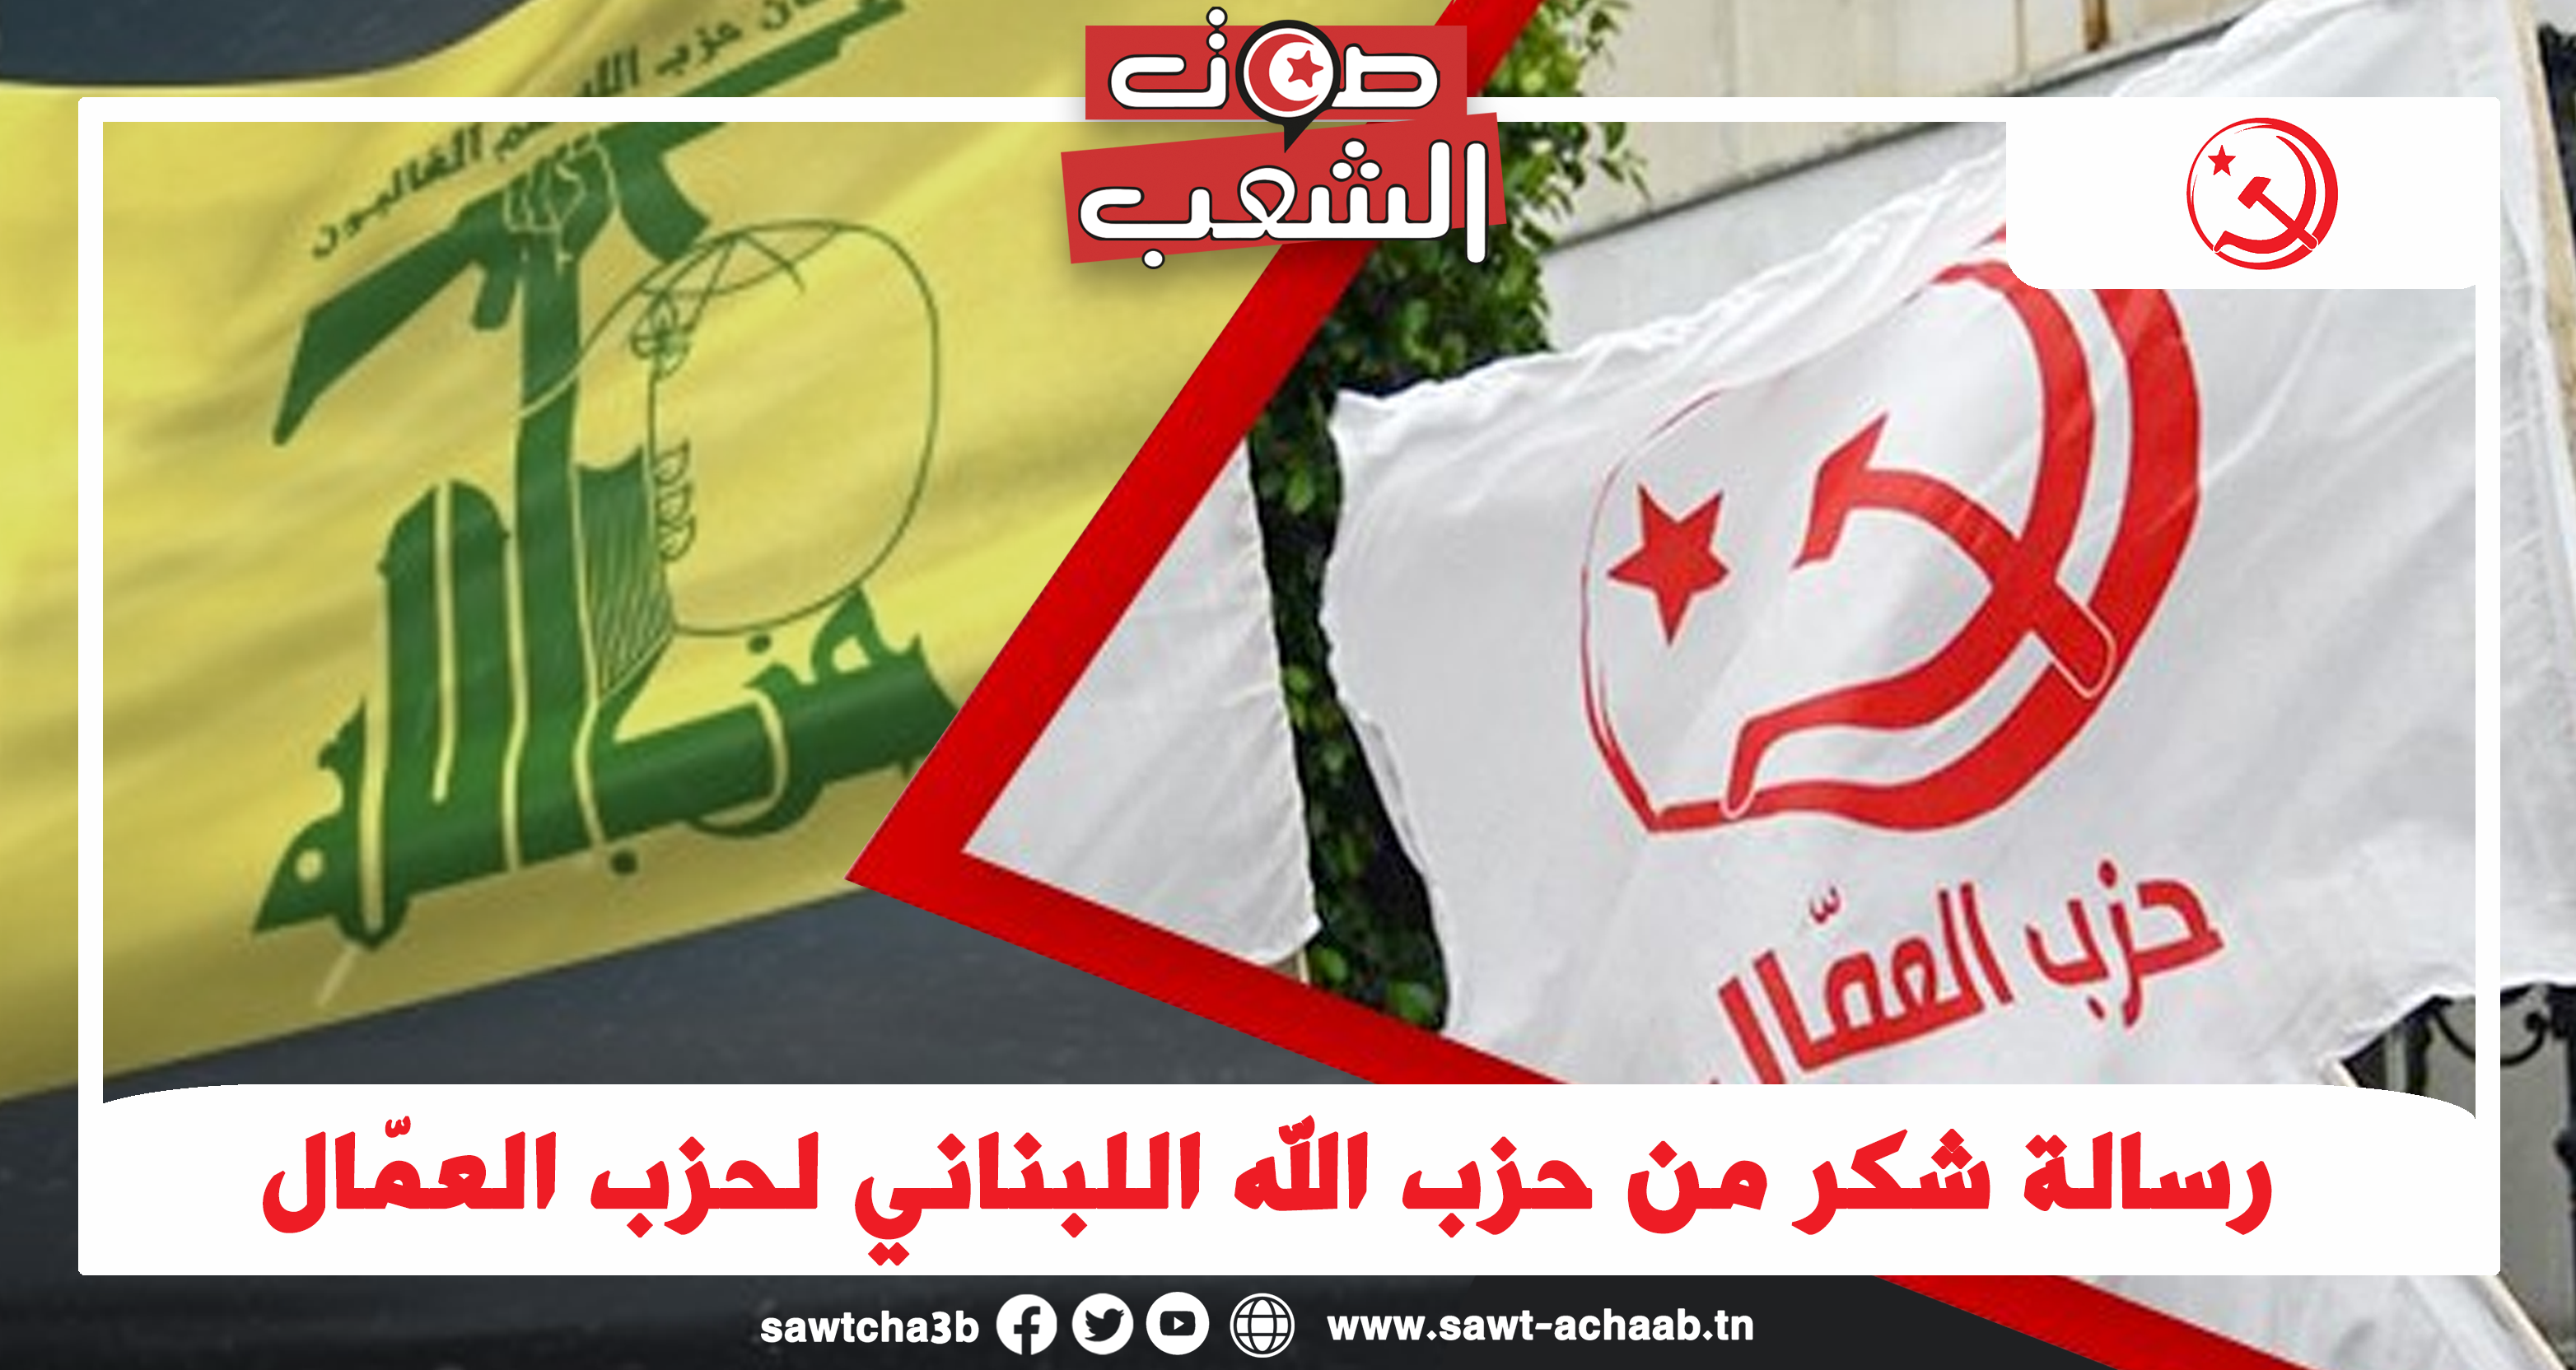 رسالة شكر من حزب الله اللبناني لحزب العمّال